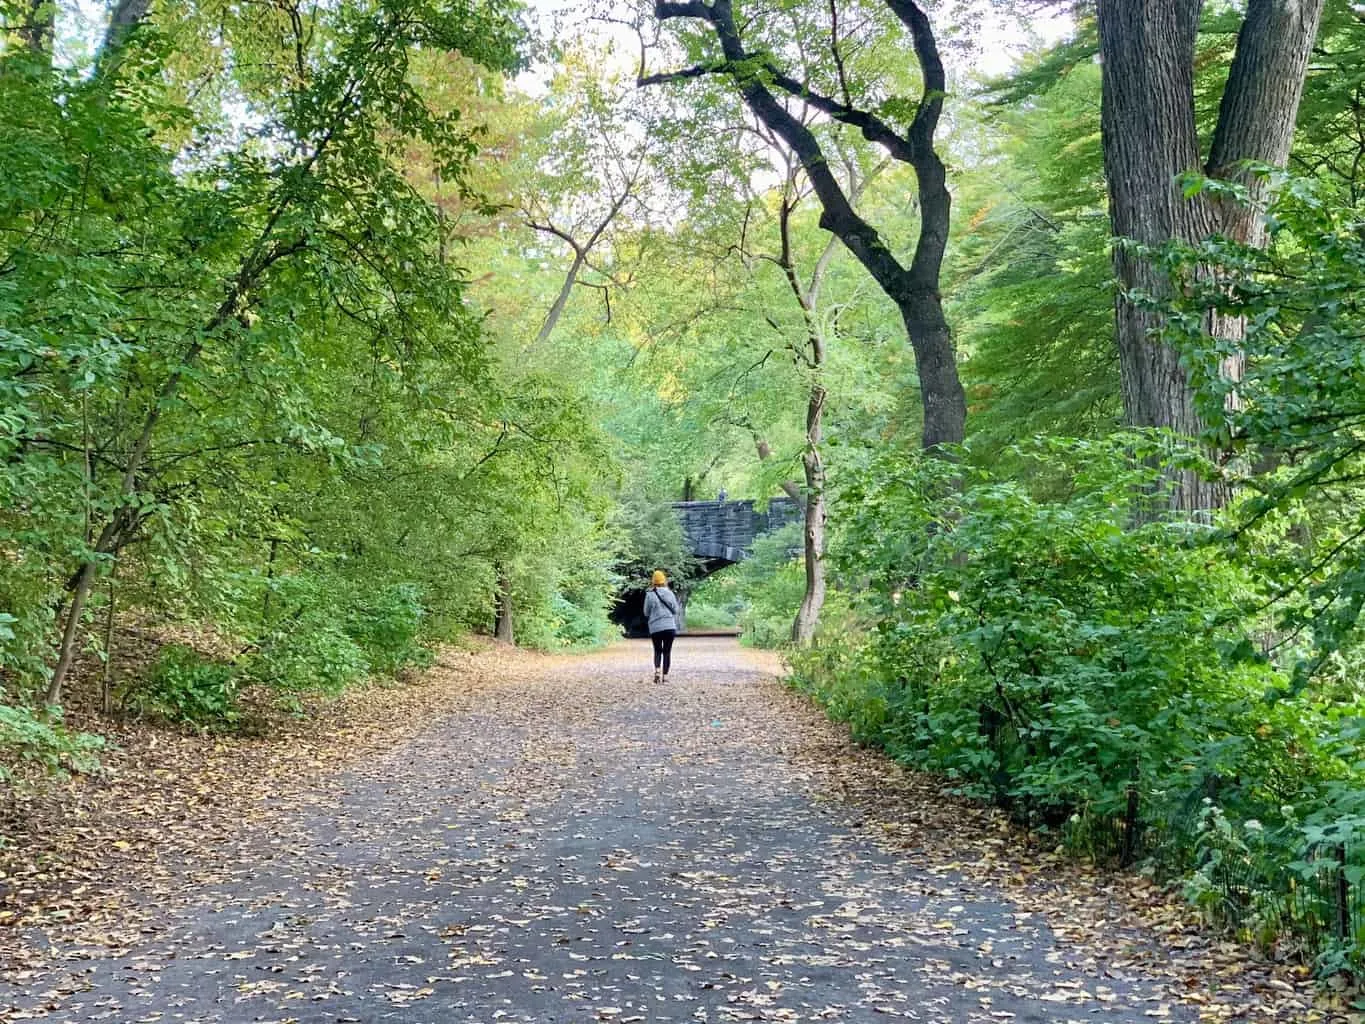 Central Park Bridle Path